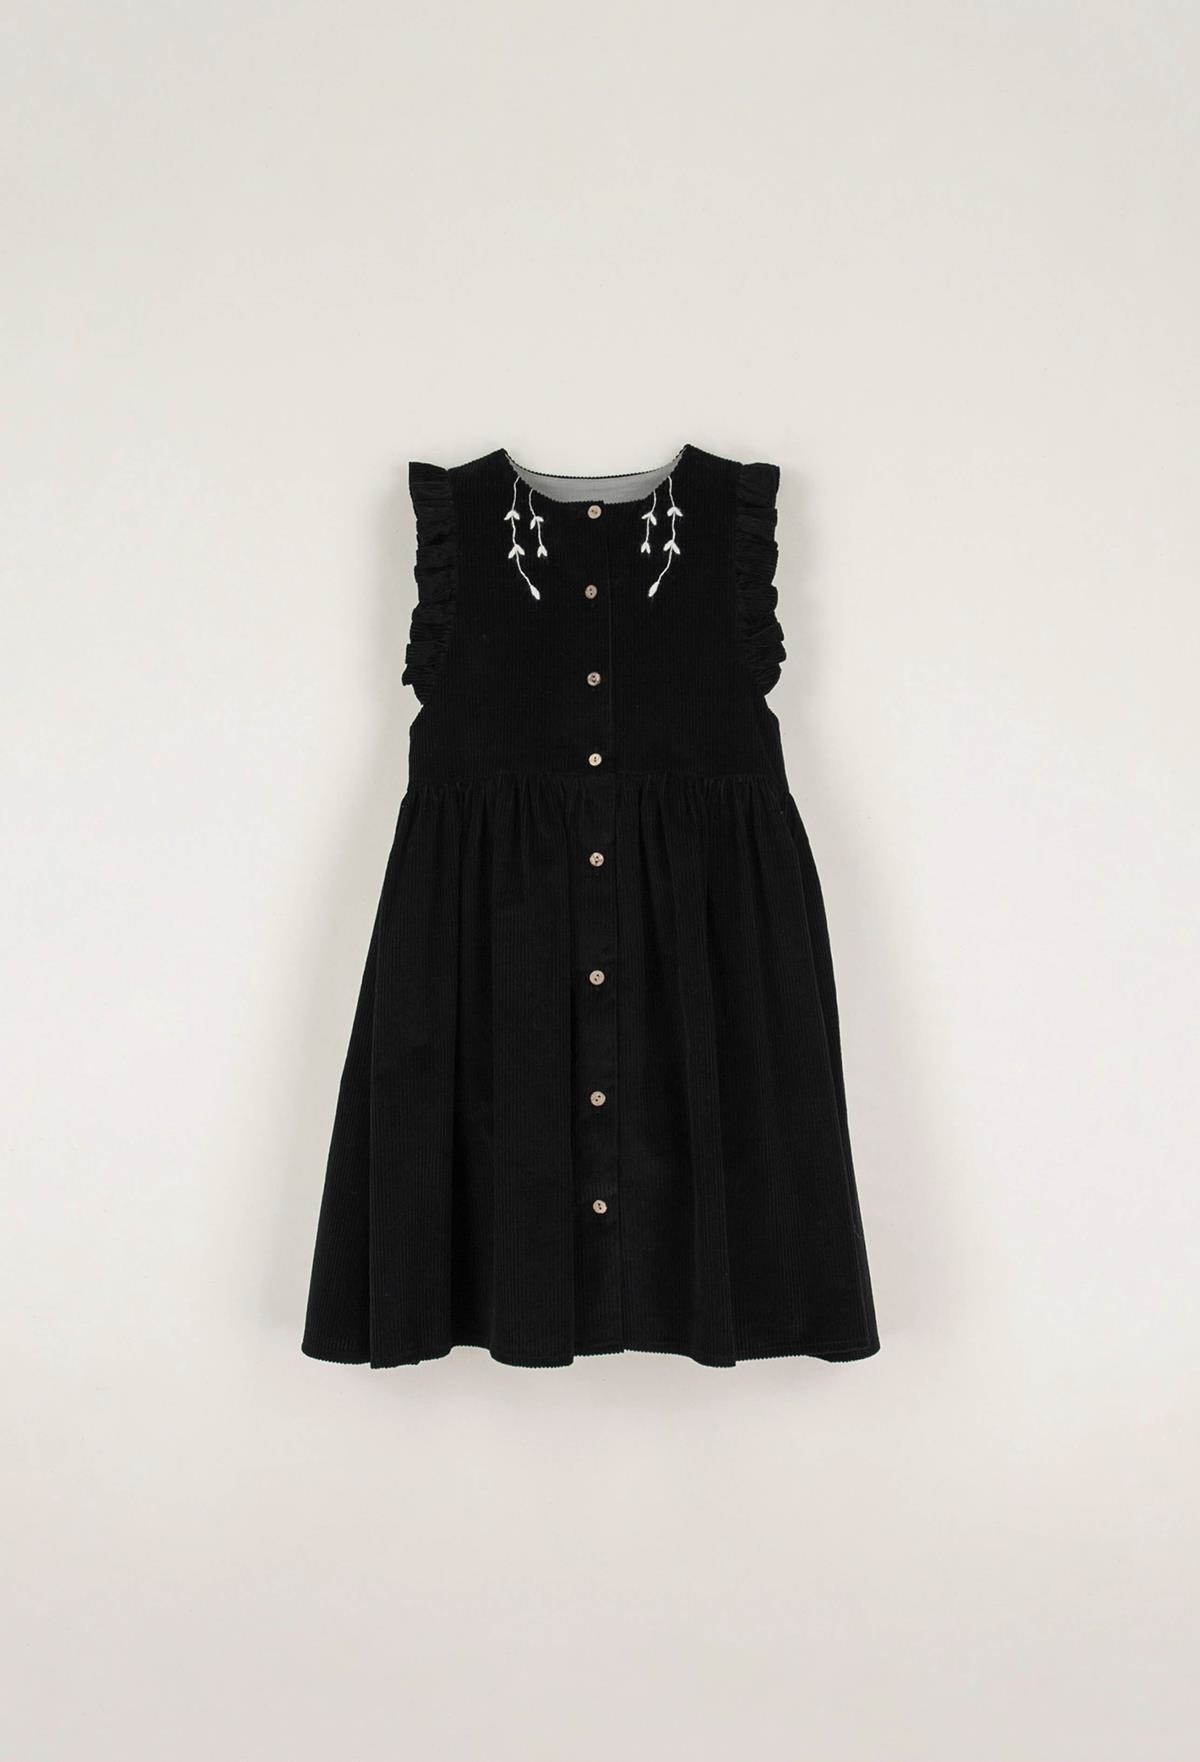 Mod.35.4 Black dress with bib | AW22.23 Mod.35.4 Black dress with bib